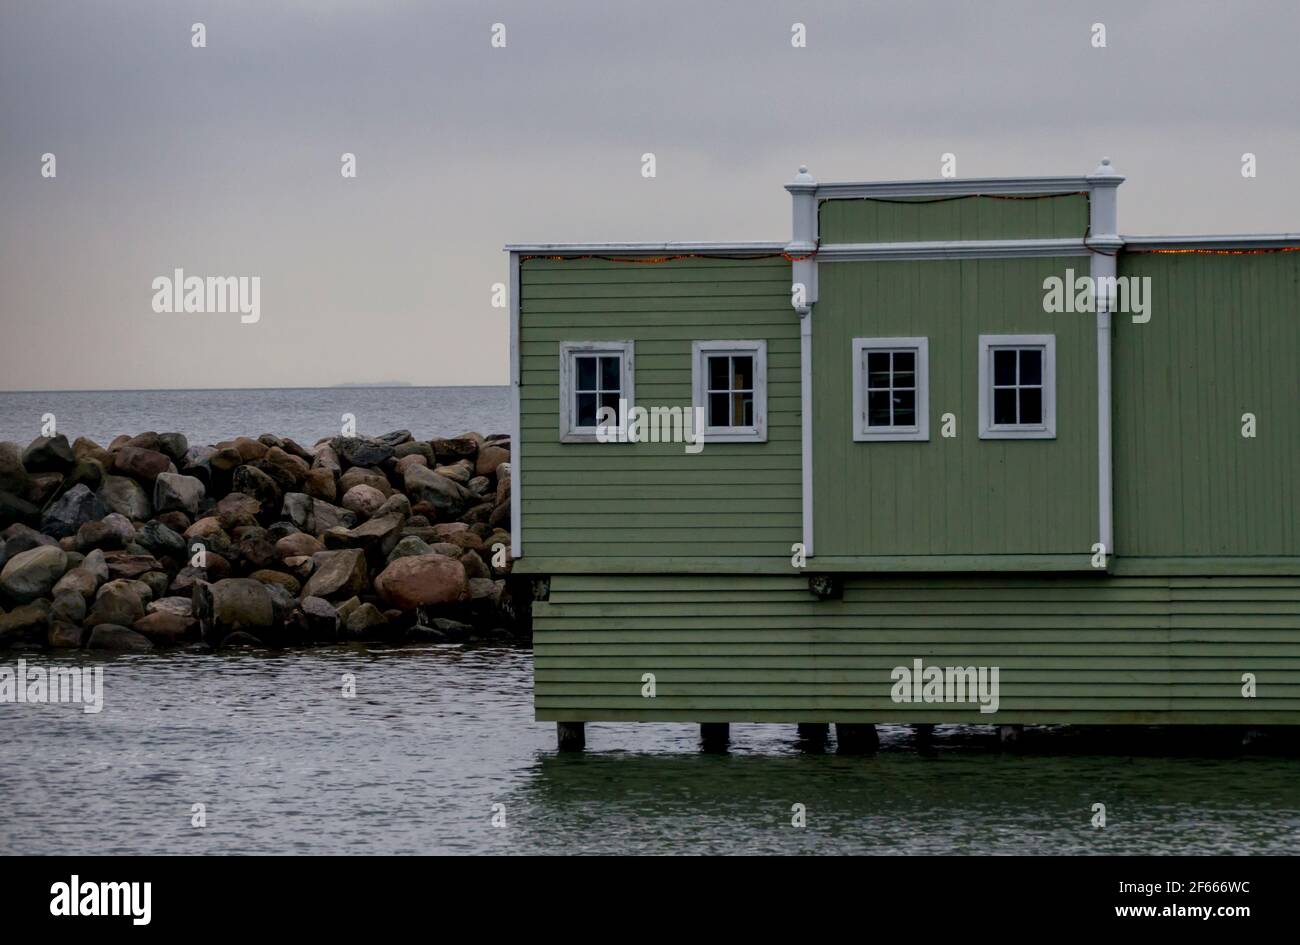 Una cabaña de madera verde se encuentra en el mar con una pared de rocas detrás de ella en Ribersborgsstranden, Malmo, Suecia. Foto de stock